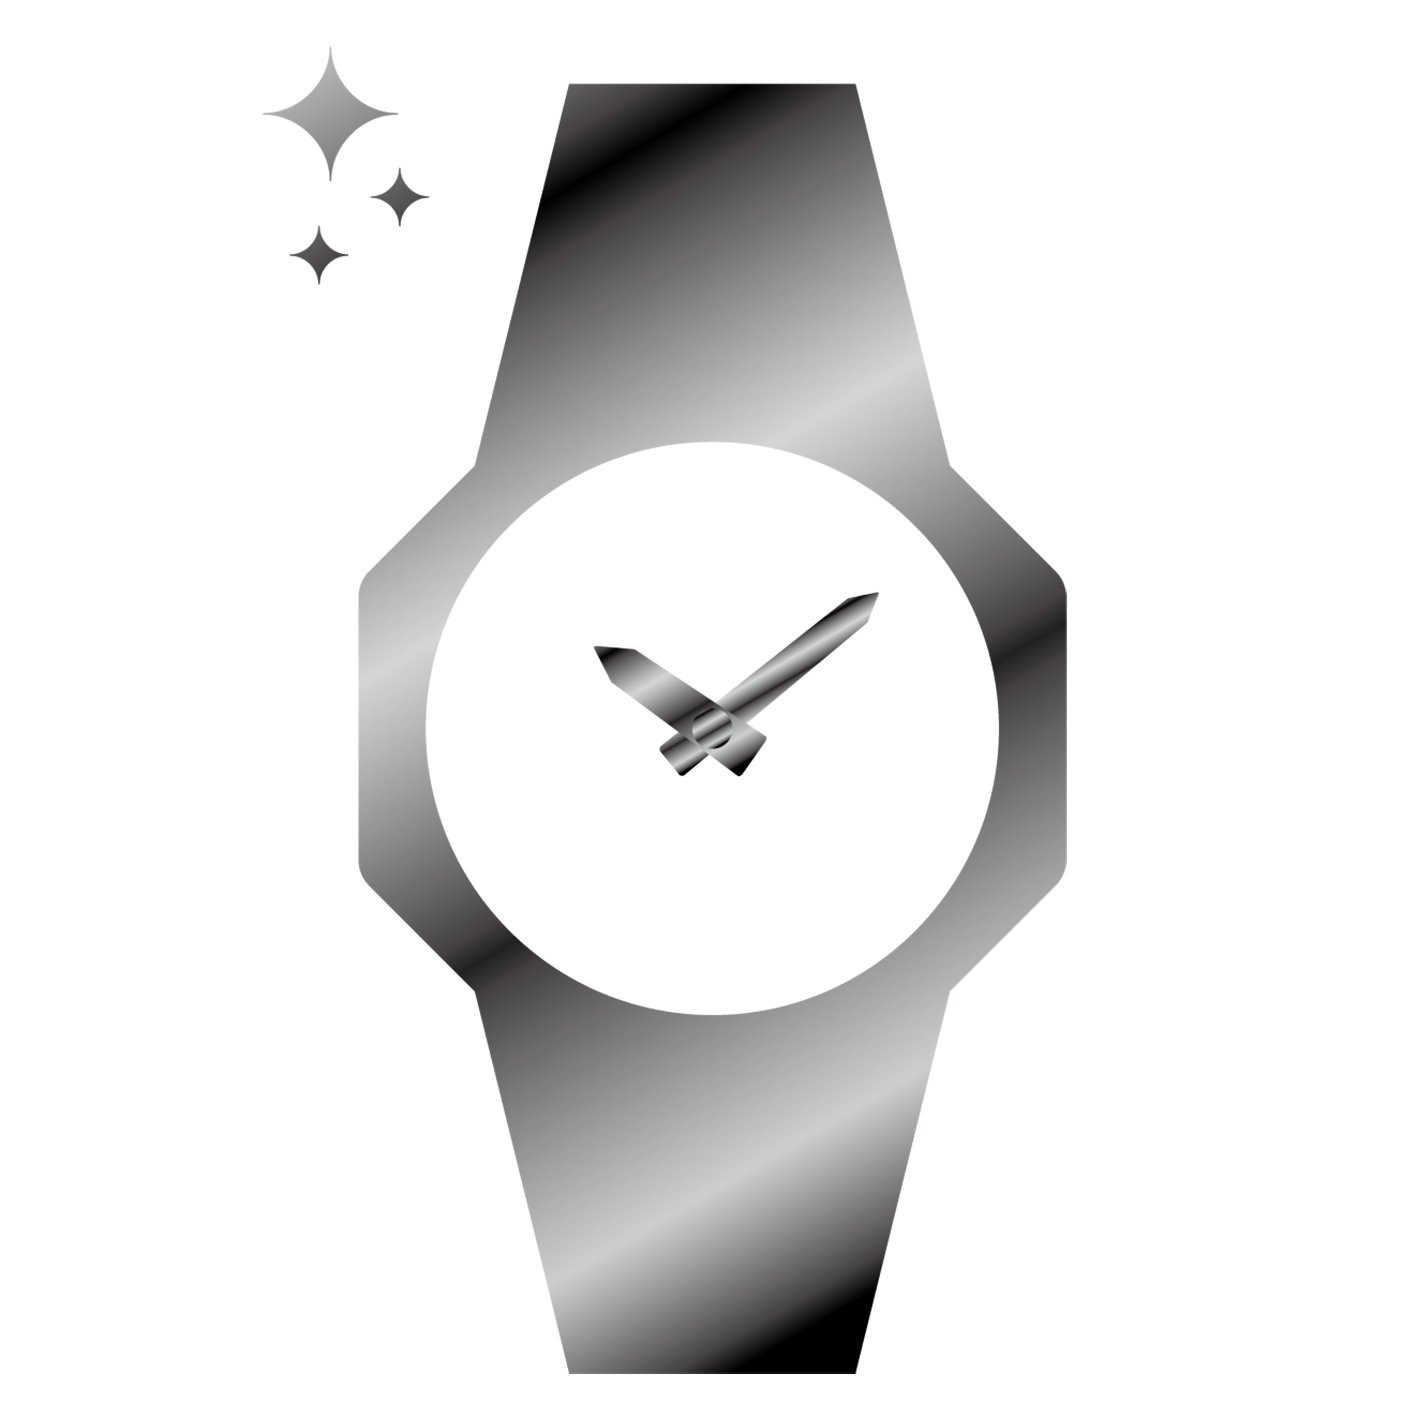 オシアナス  OCW-T6000-1AJF【国内正規品】【ノベルティ付・ｷﾞﾌﾄ包装無料】OCEANUS 電波 ソーラー メンズ 腕時計画像